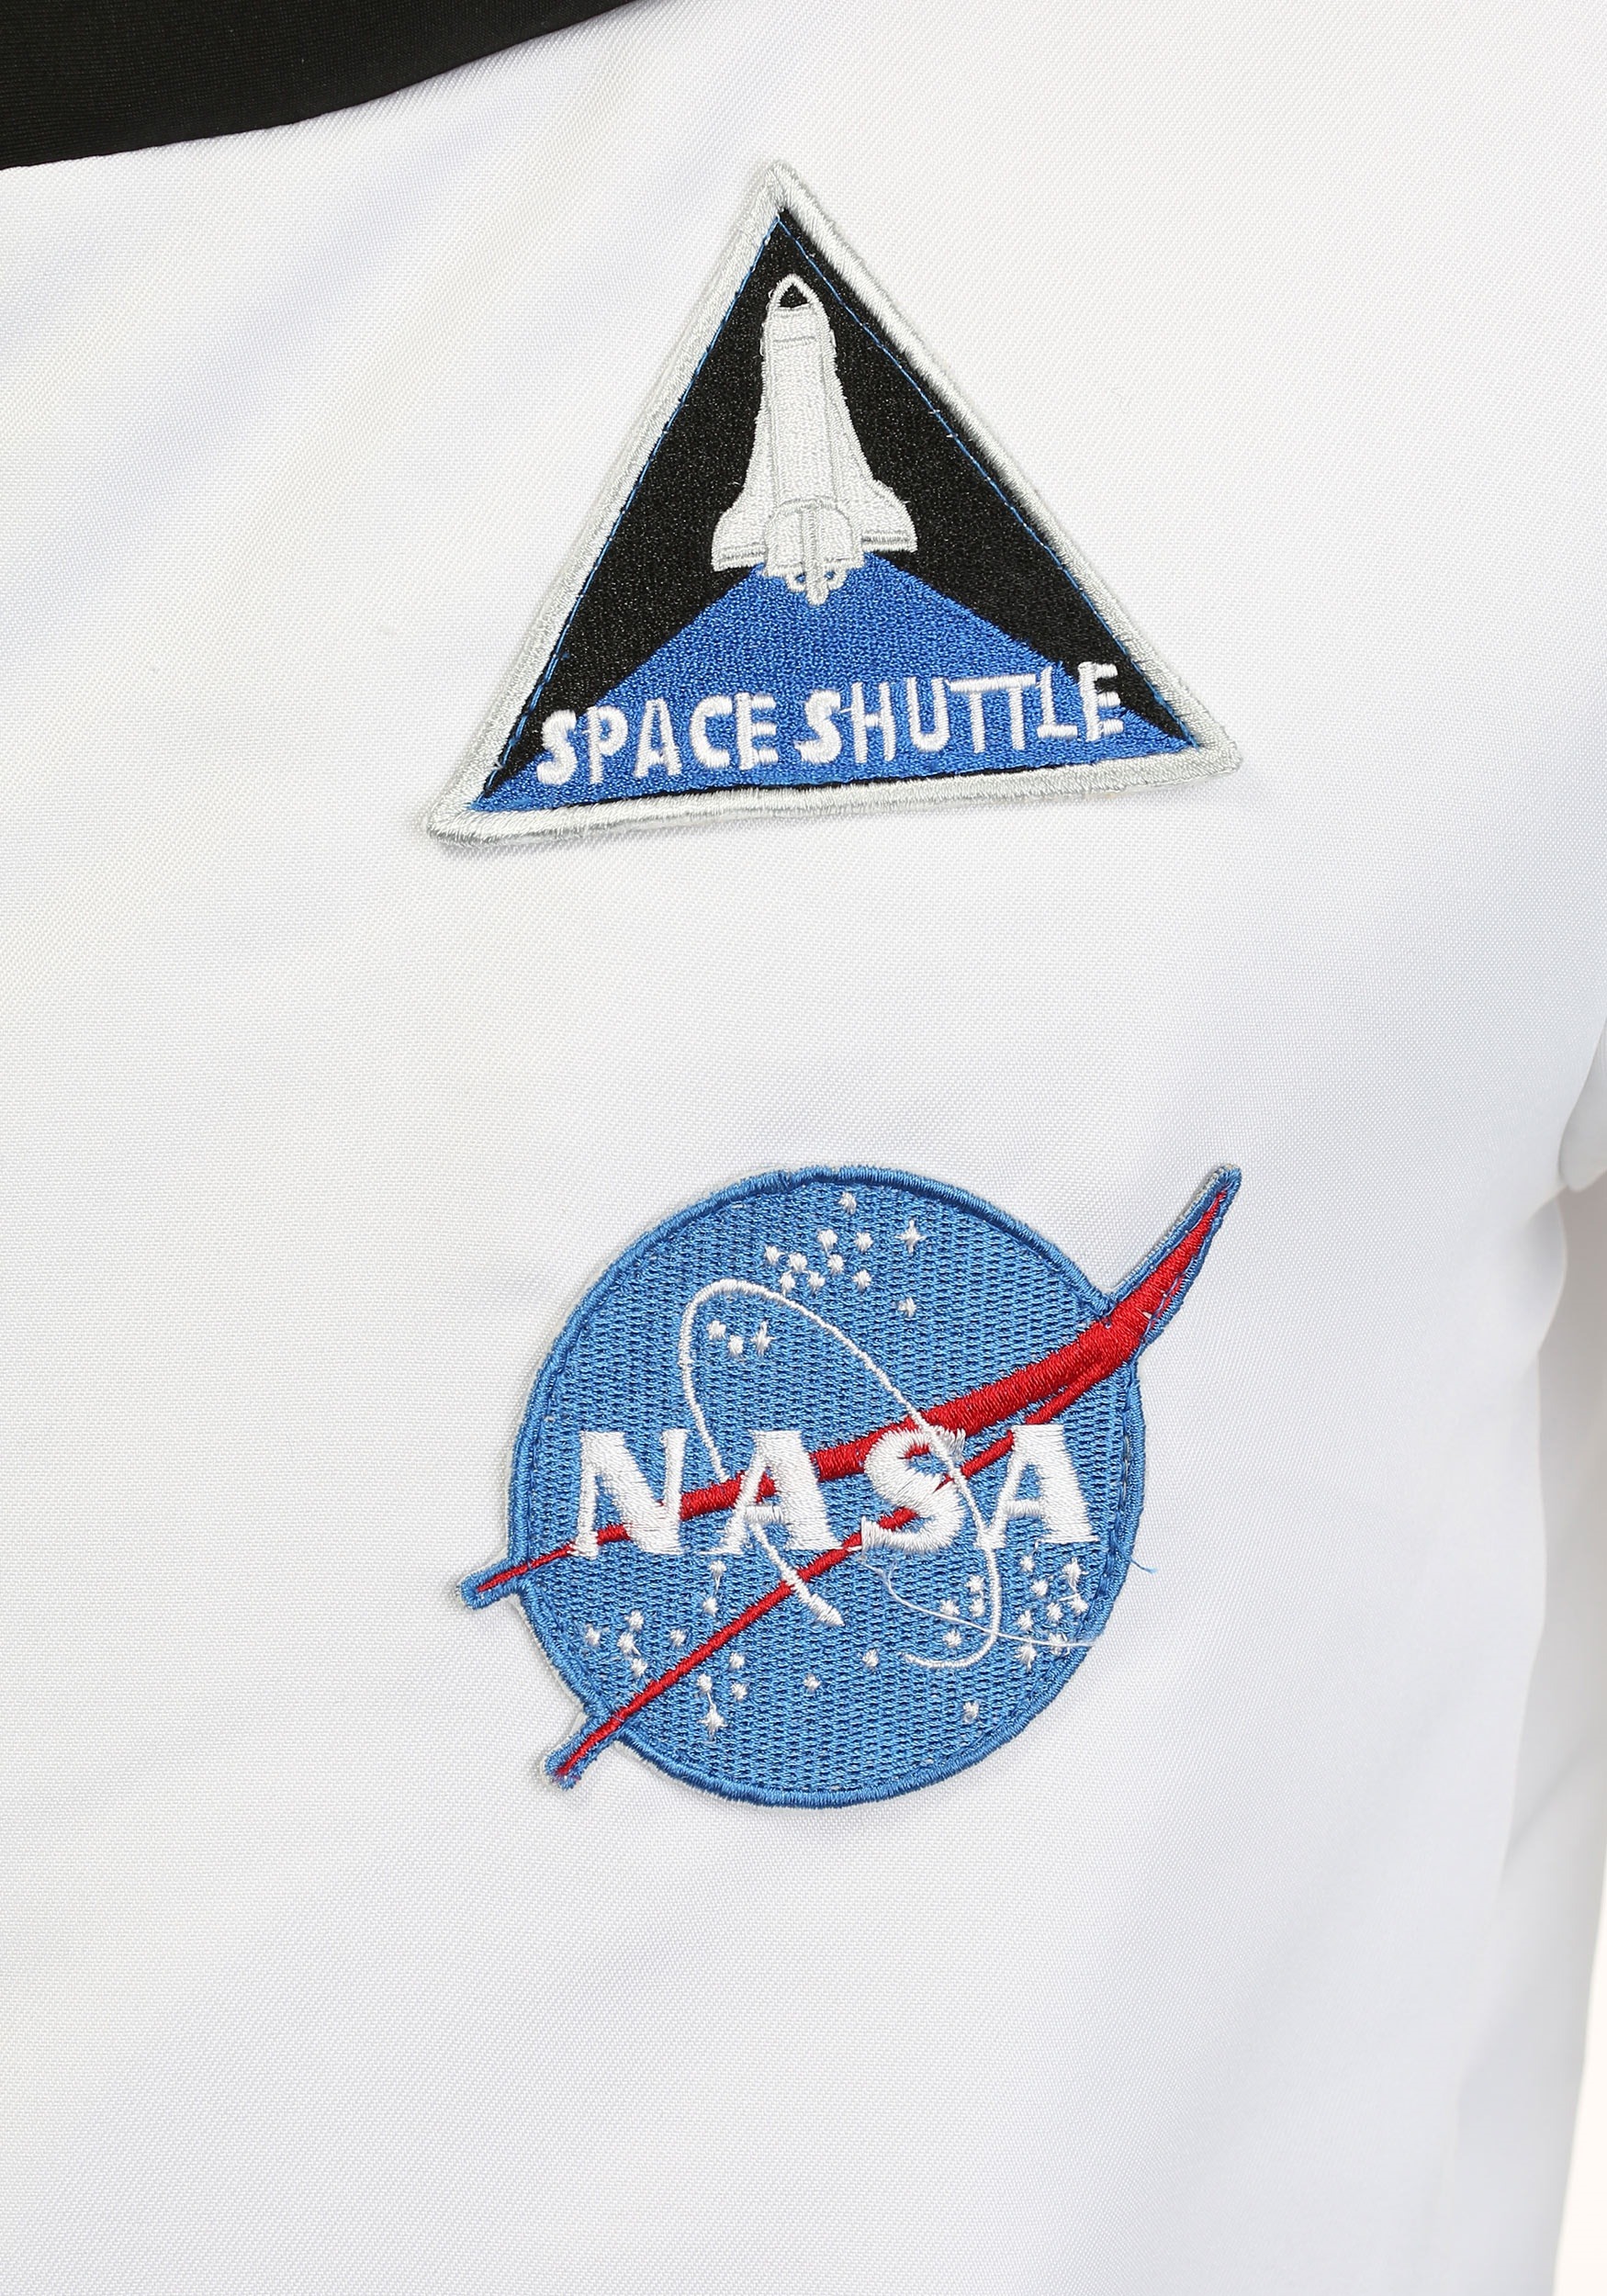 Deluxe Astronaut Fancy Dress Costume For Men